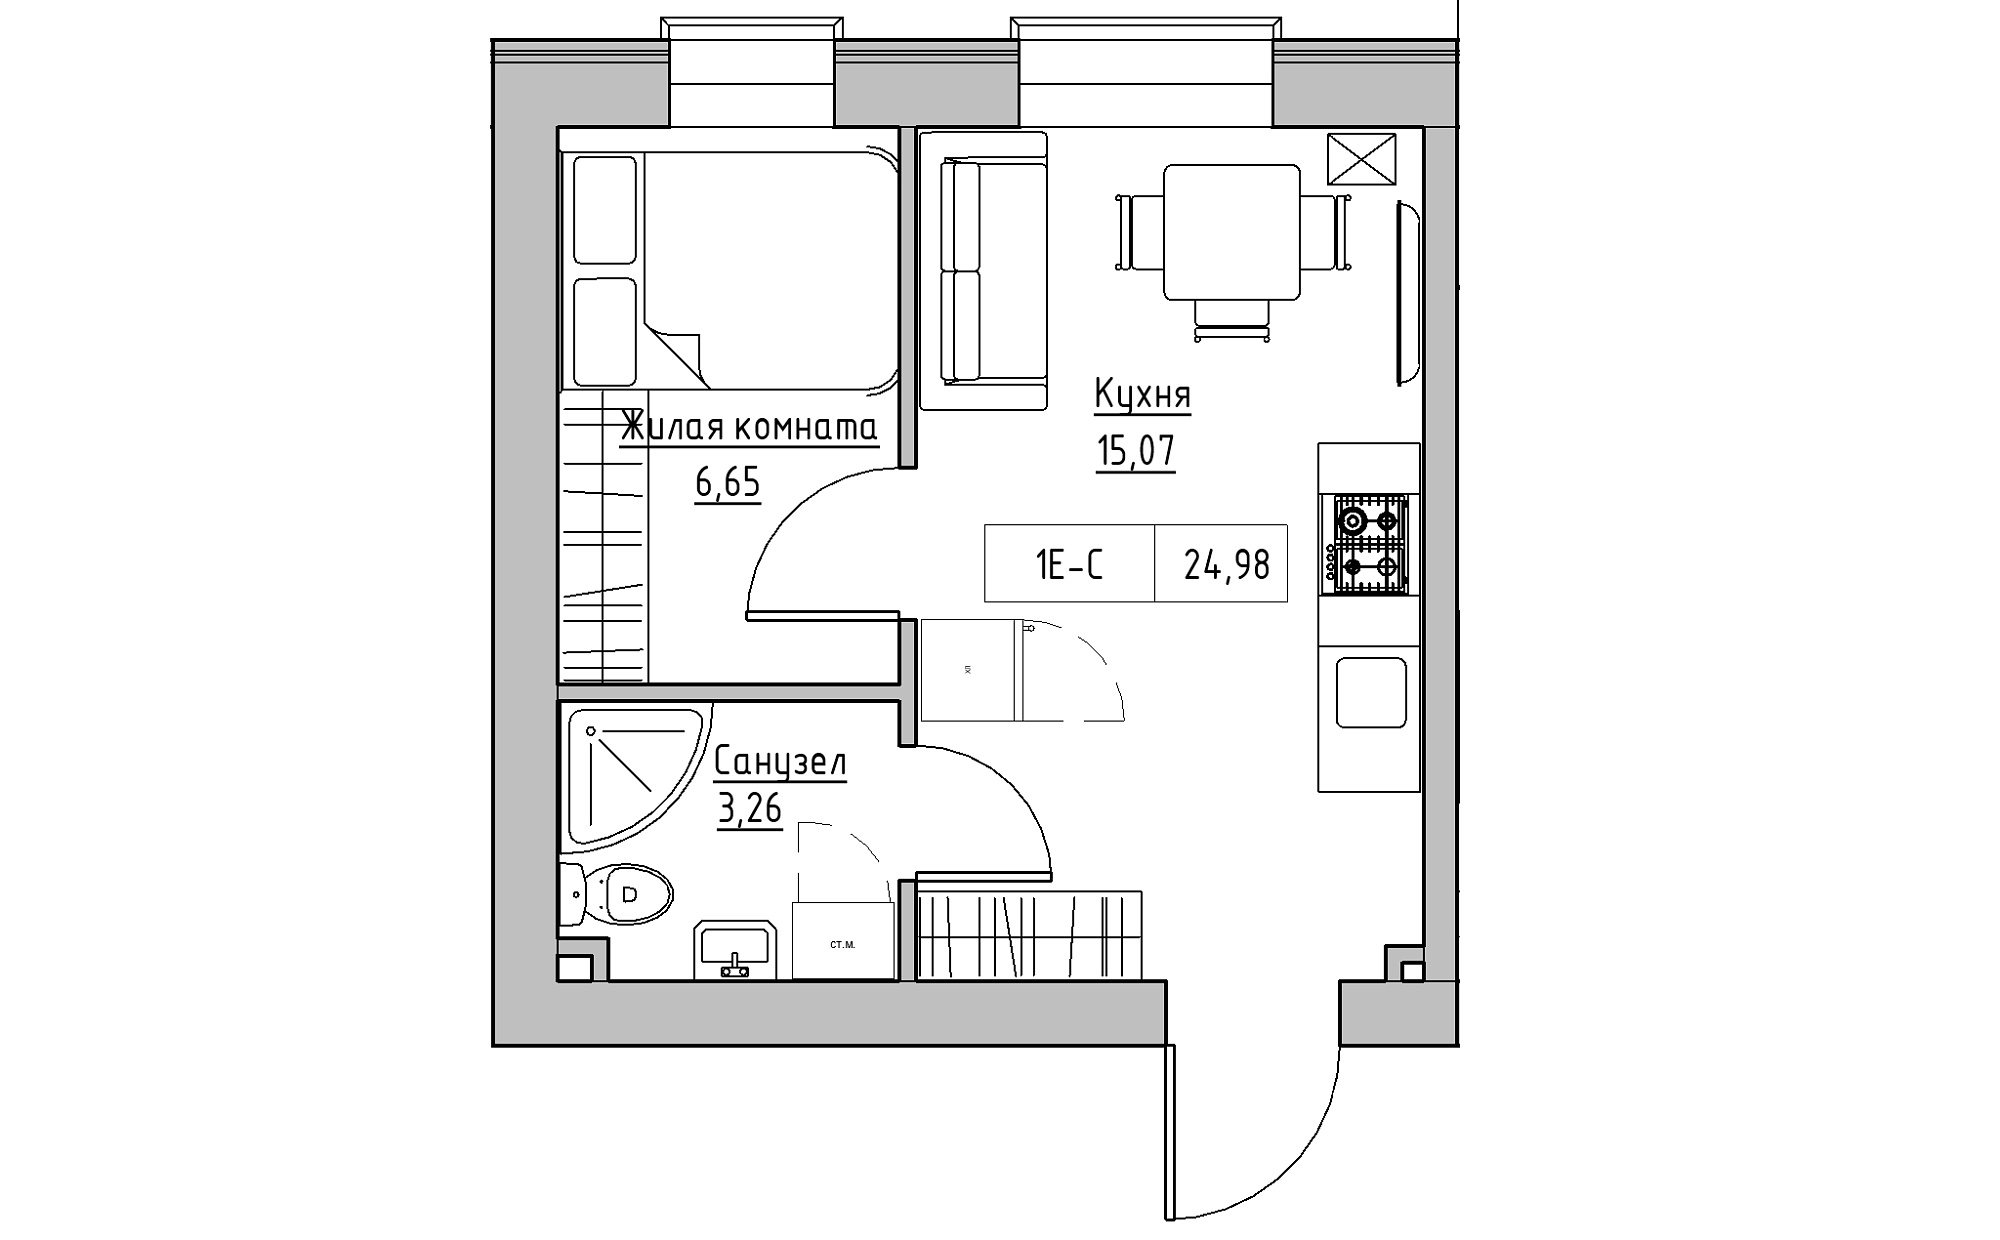 Планування 1-к квартира площею 24.98м2, KS-022-03/0004.